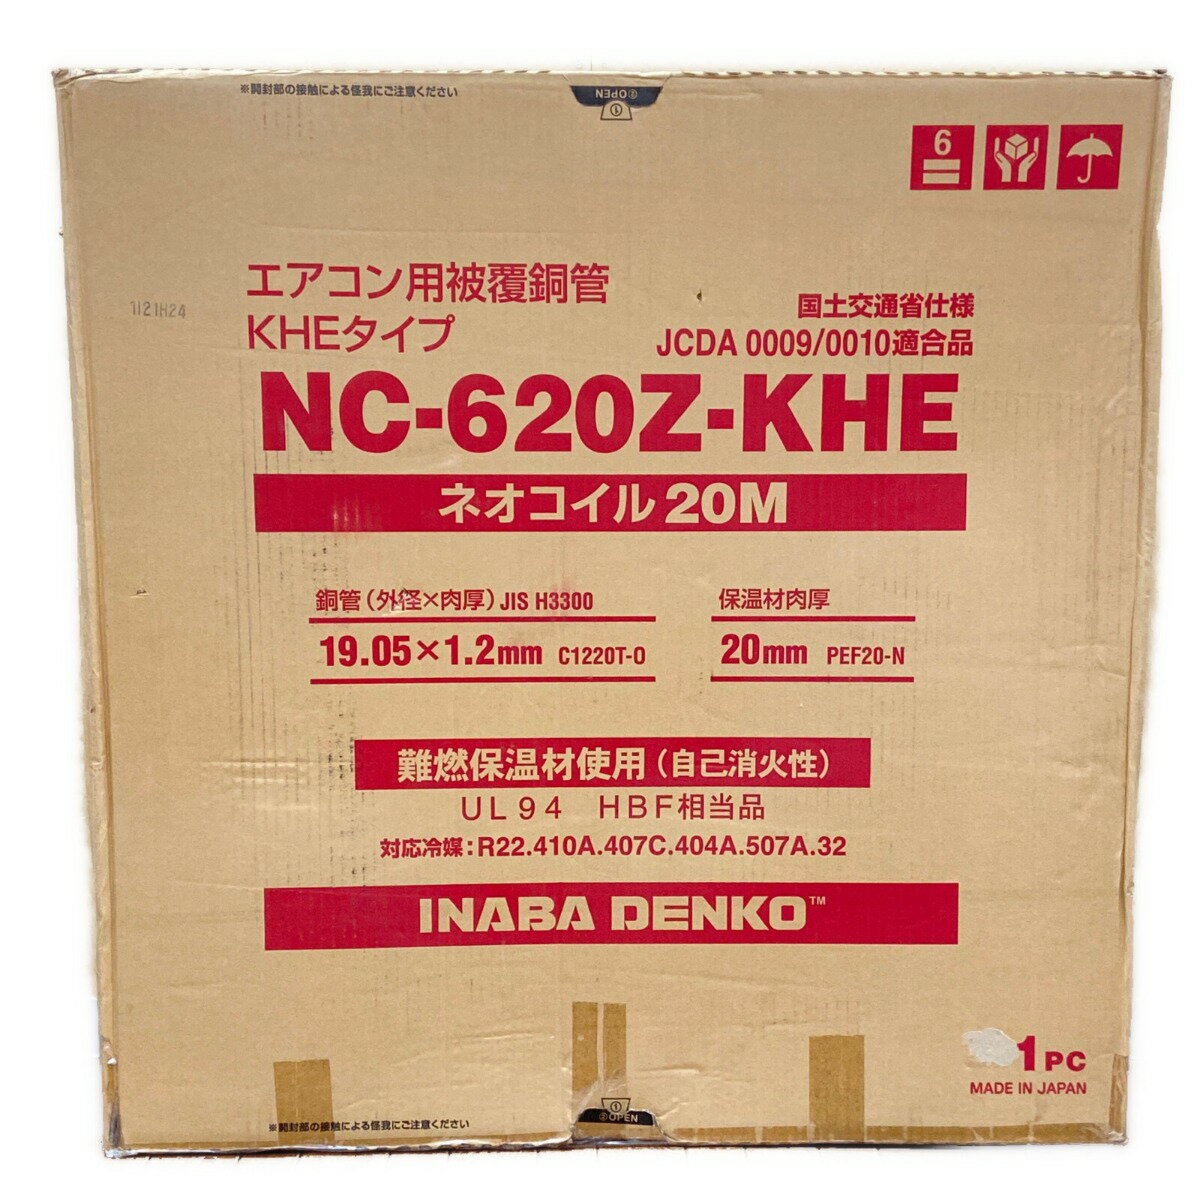 ΦΦ【中古】INABA ネオコイル20M エアコン用被覆銅管 NC-620Z-KHE Sランク